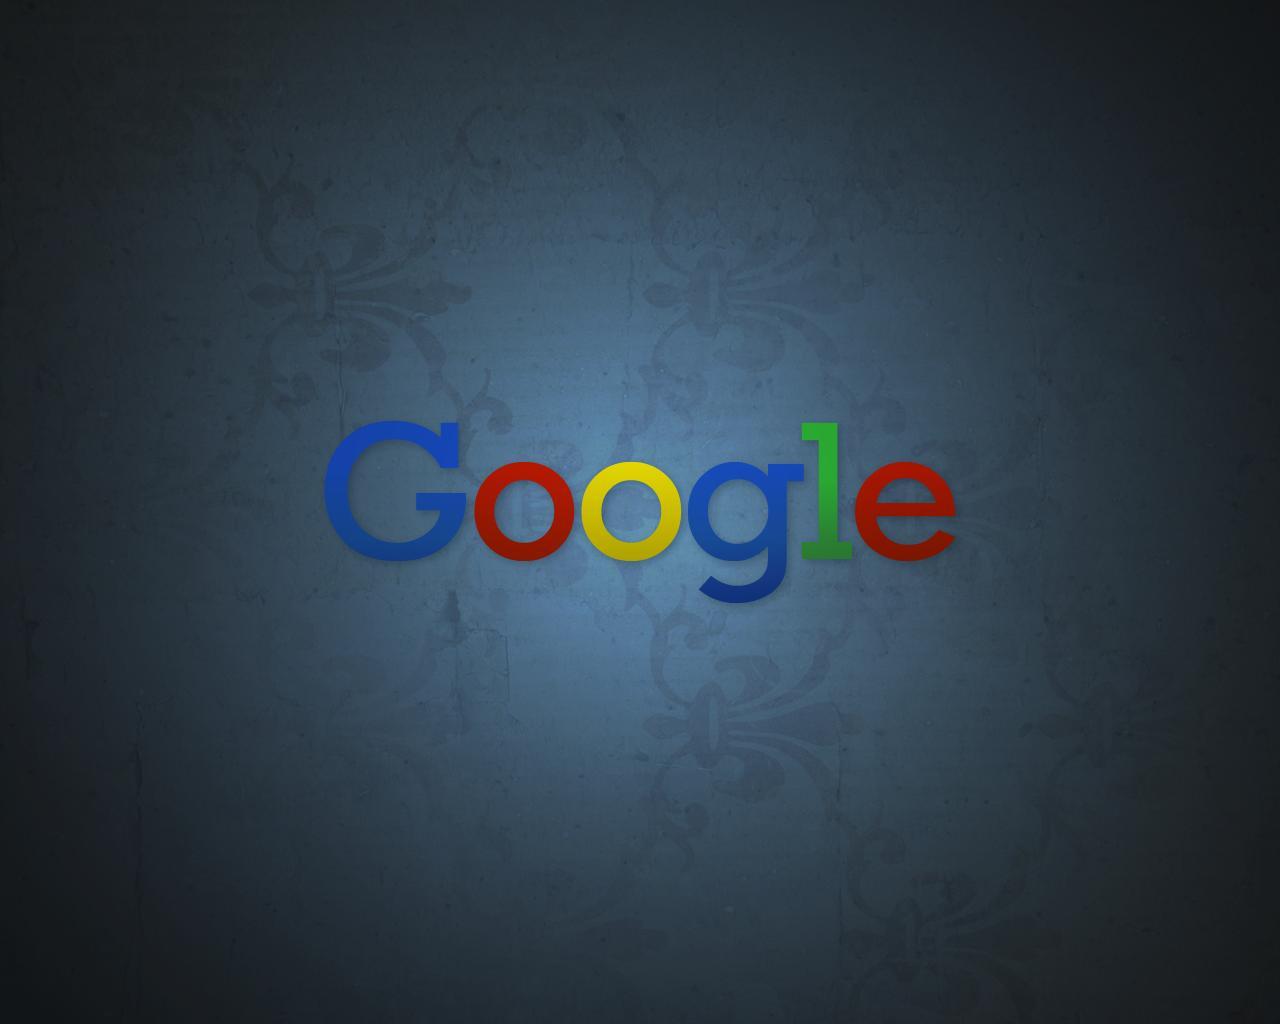 Google Desktop Wallpaper. High Definition Wallpaper